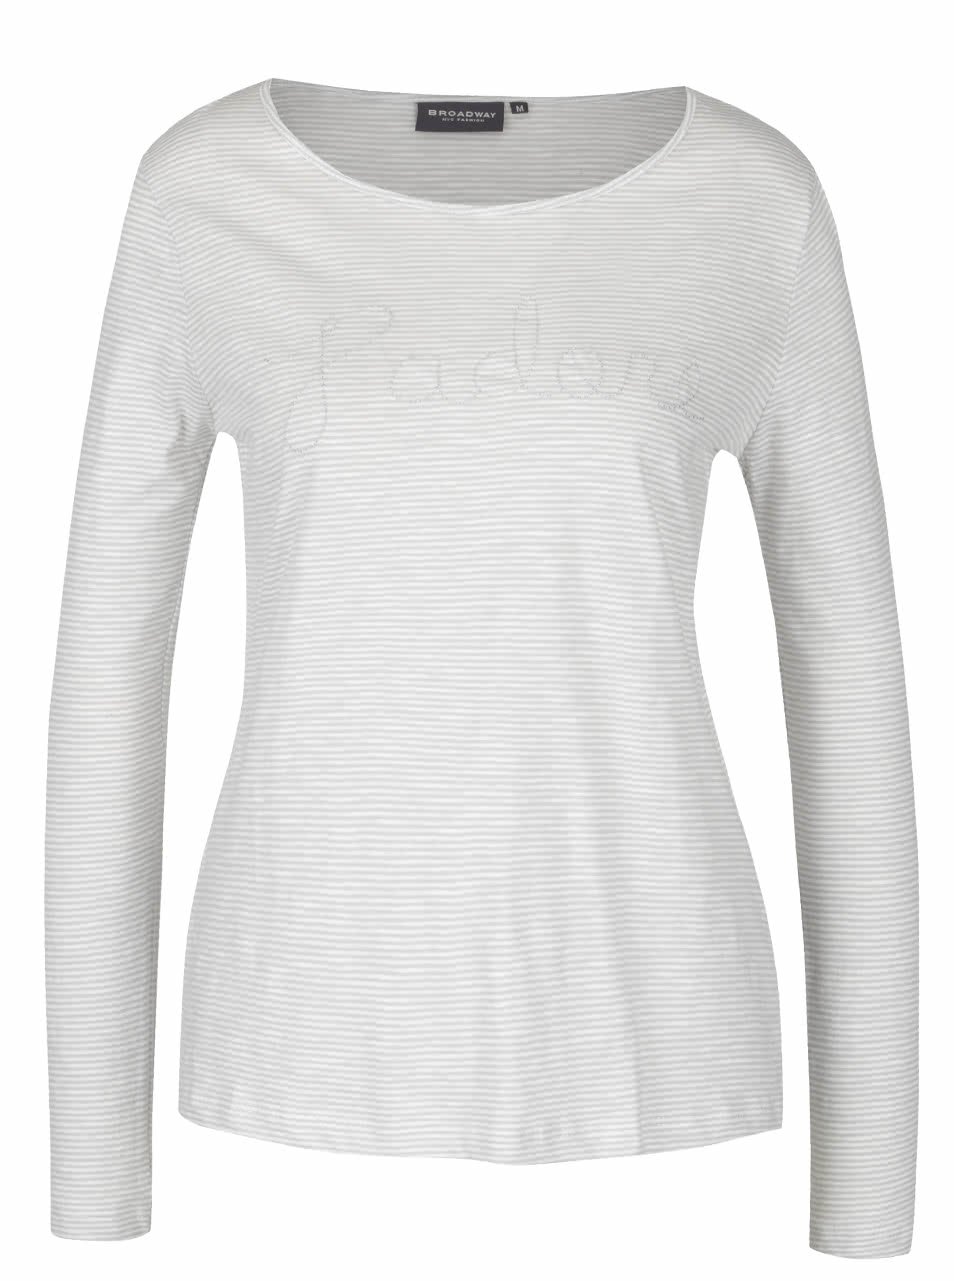 Krémovo-šedé dámské pruhované tričko s dlouhým rukávem Broadway Betty